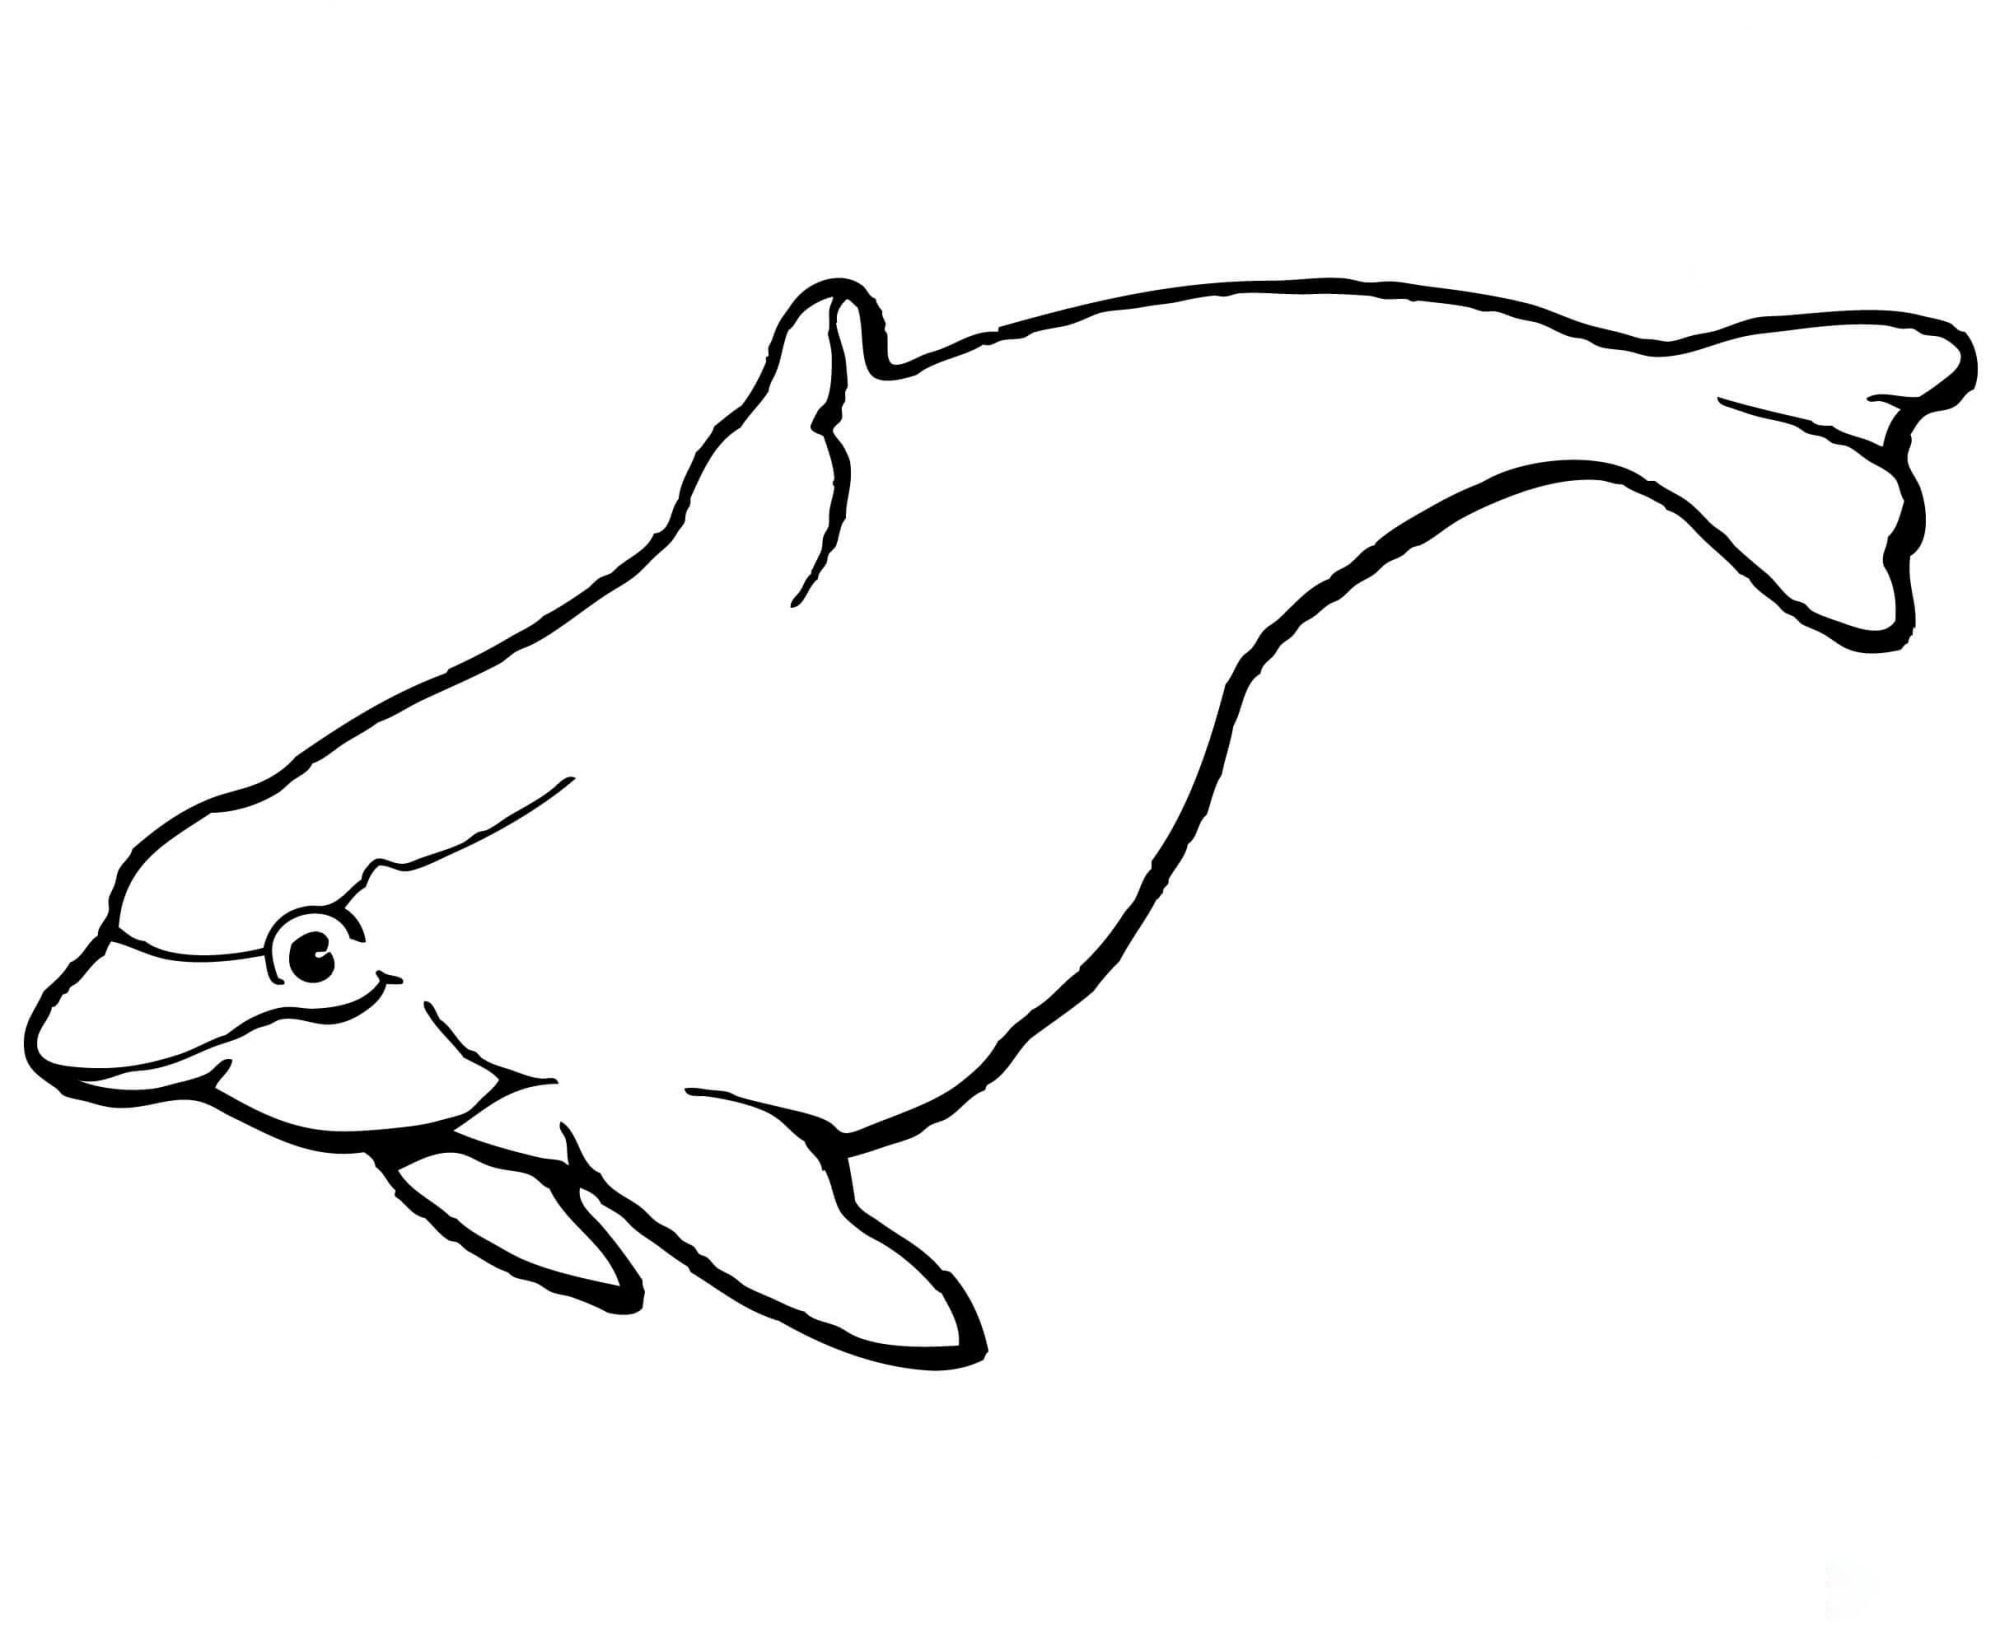 El delfín marsopa tiene una cabeza bulbosa y un cuerpo en forma de torpedo de Dolphin